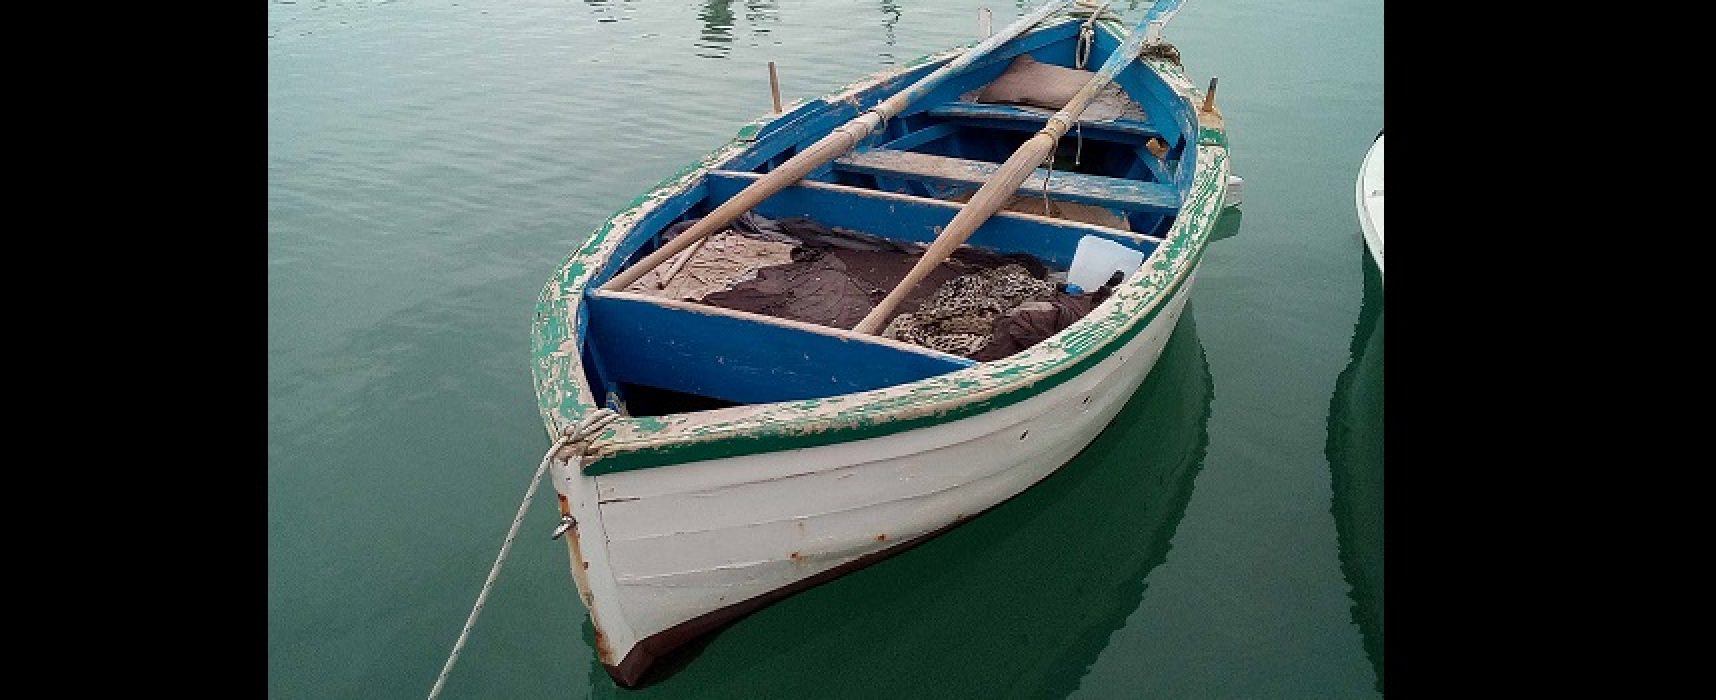 “L’imbarco dei Mille”, Iologico avvia crowdfunding per salvare un’imbarcazione storica